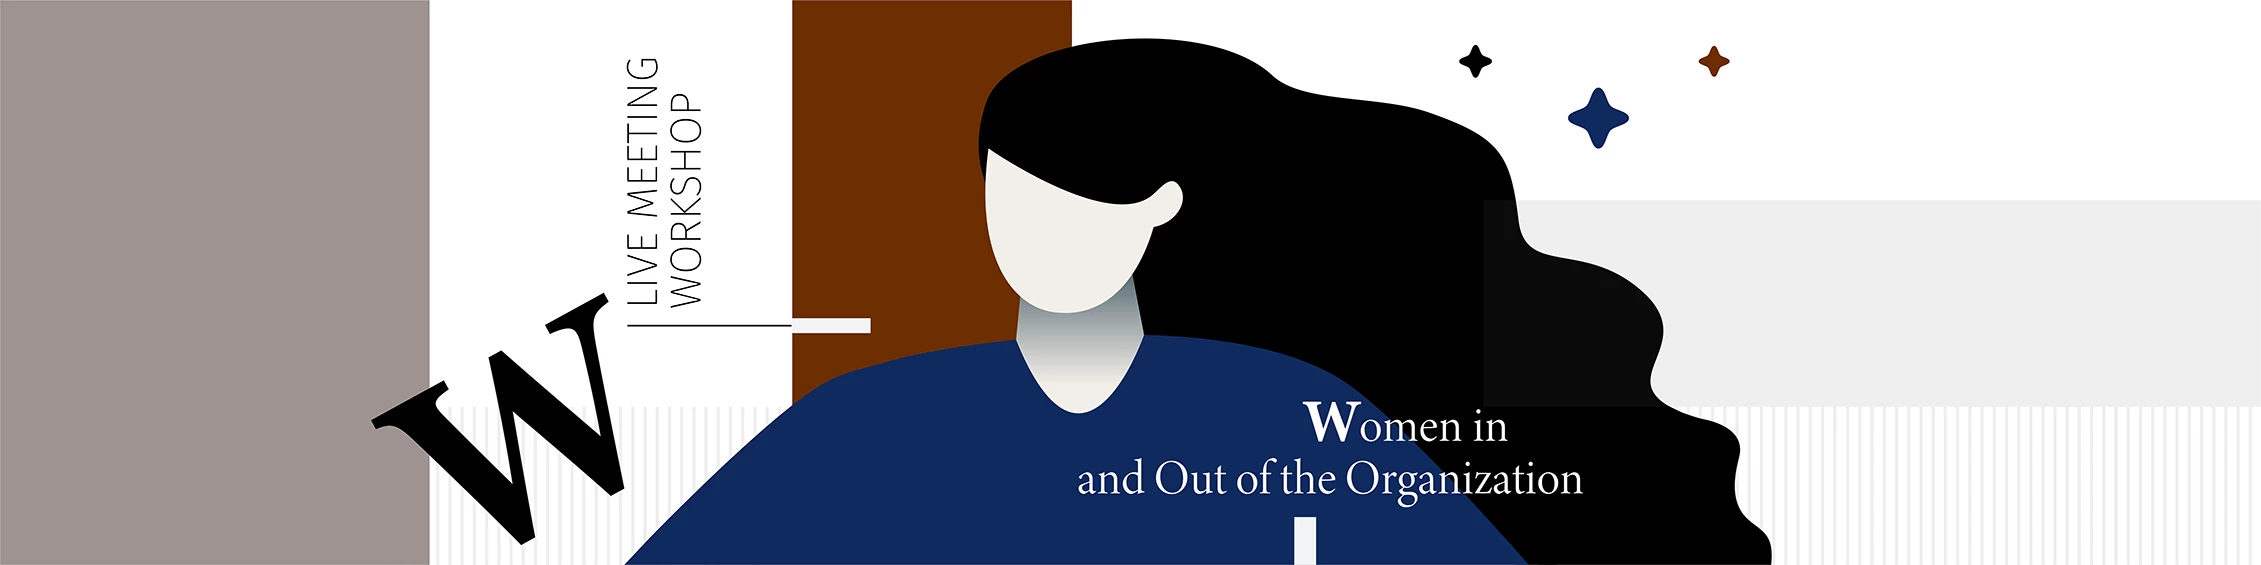 News: LIVE შეხვედრა სემინარი - ქალთა სოციალური და ეკონომიკური გაძლიერება ორგანიზაციაში და მის გარეთ